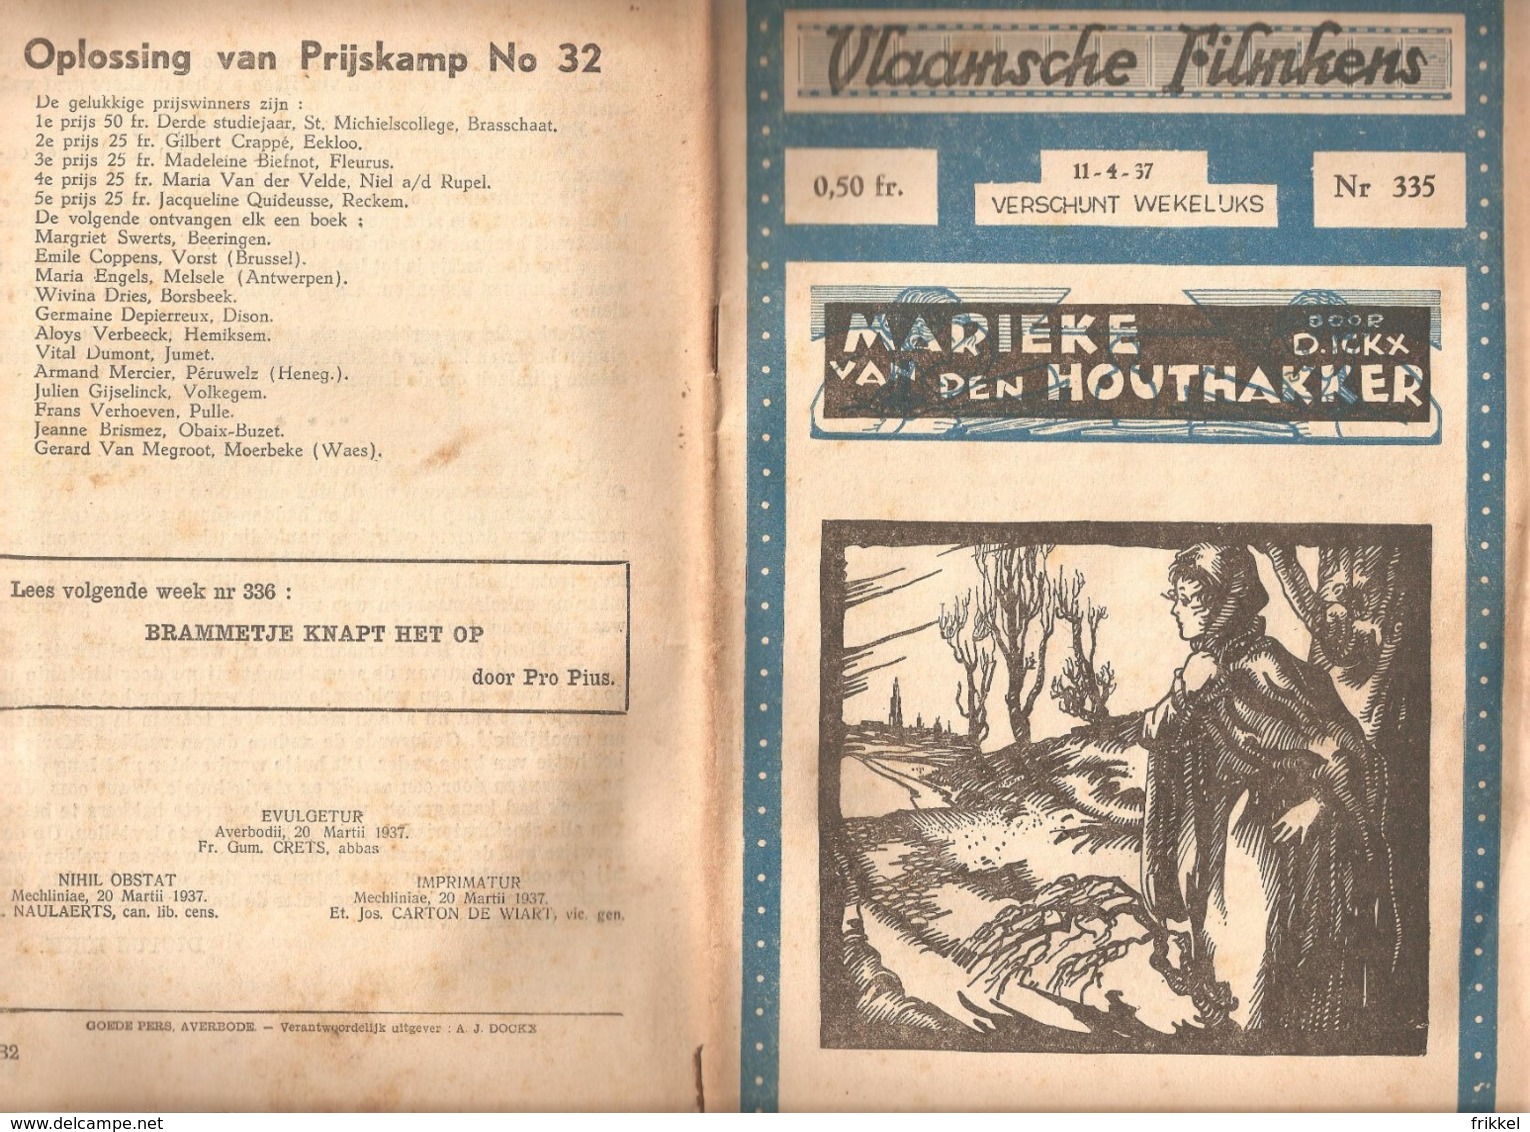 Vlaamsche Filmkens 335 Marieke Van Den Houthakker D Ickx 1937 GROOT FORMAAT: 16x23,5cm Averbode's Jeugbibliotheek - Oud